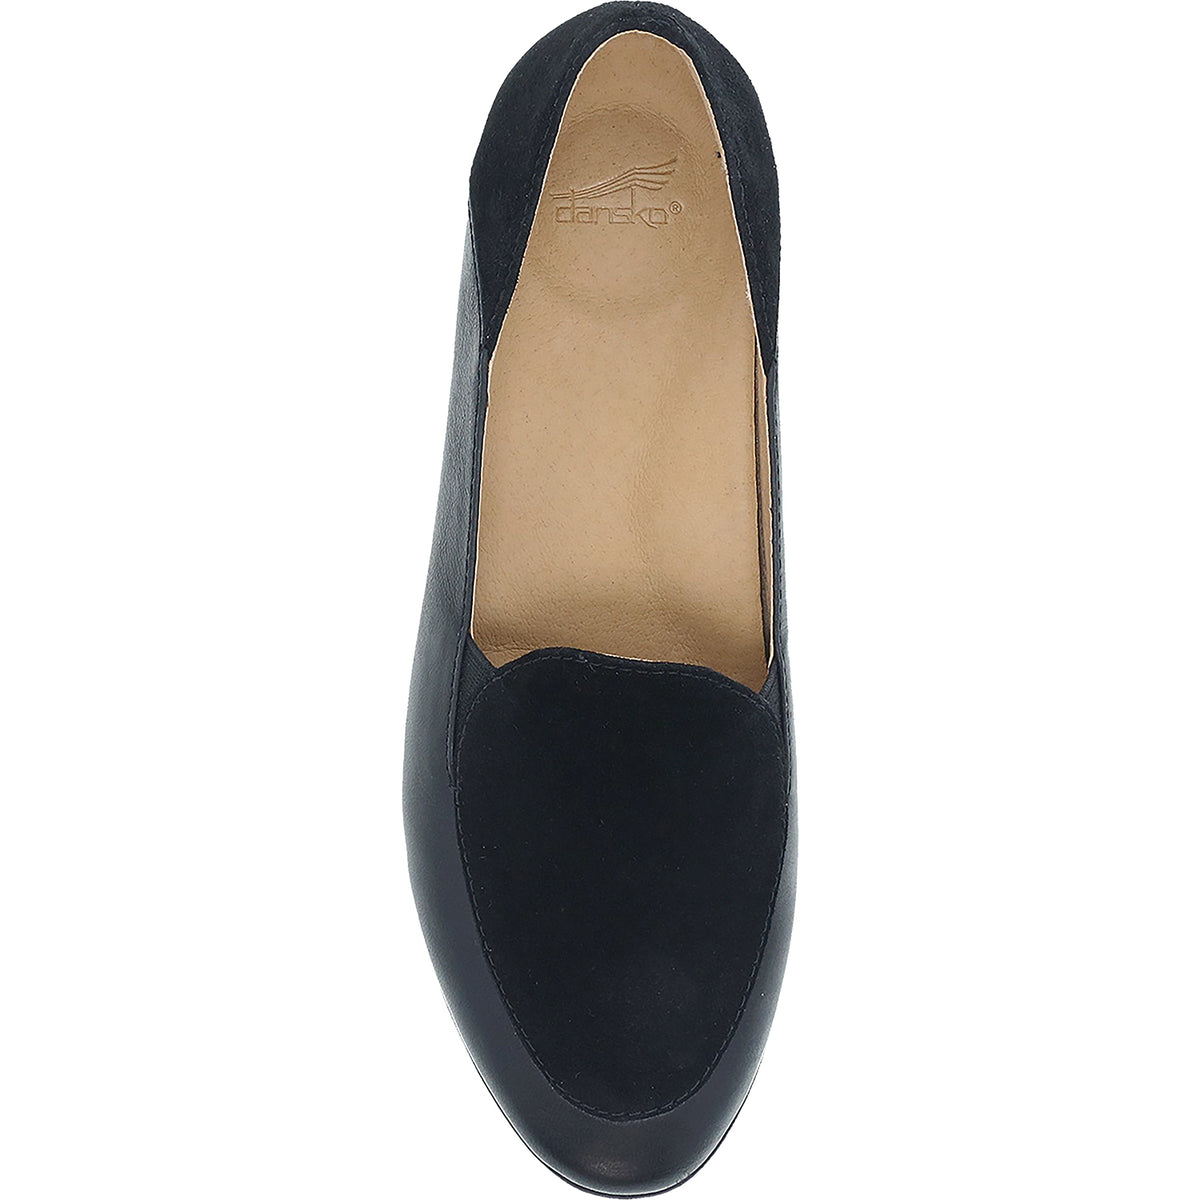 Women's Dansko Lace Black Glazed Kid leather – Footwear etc.